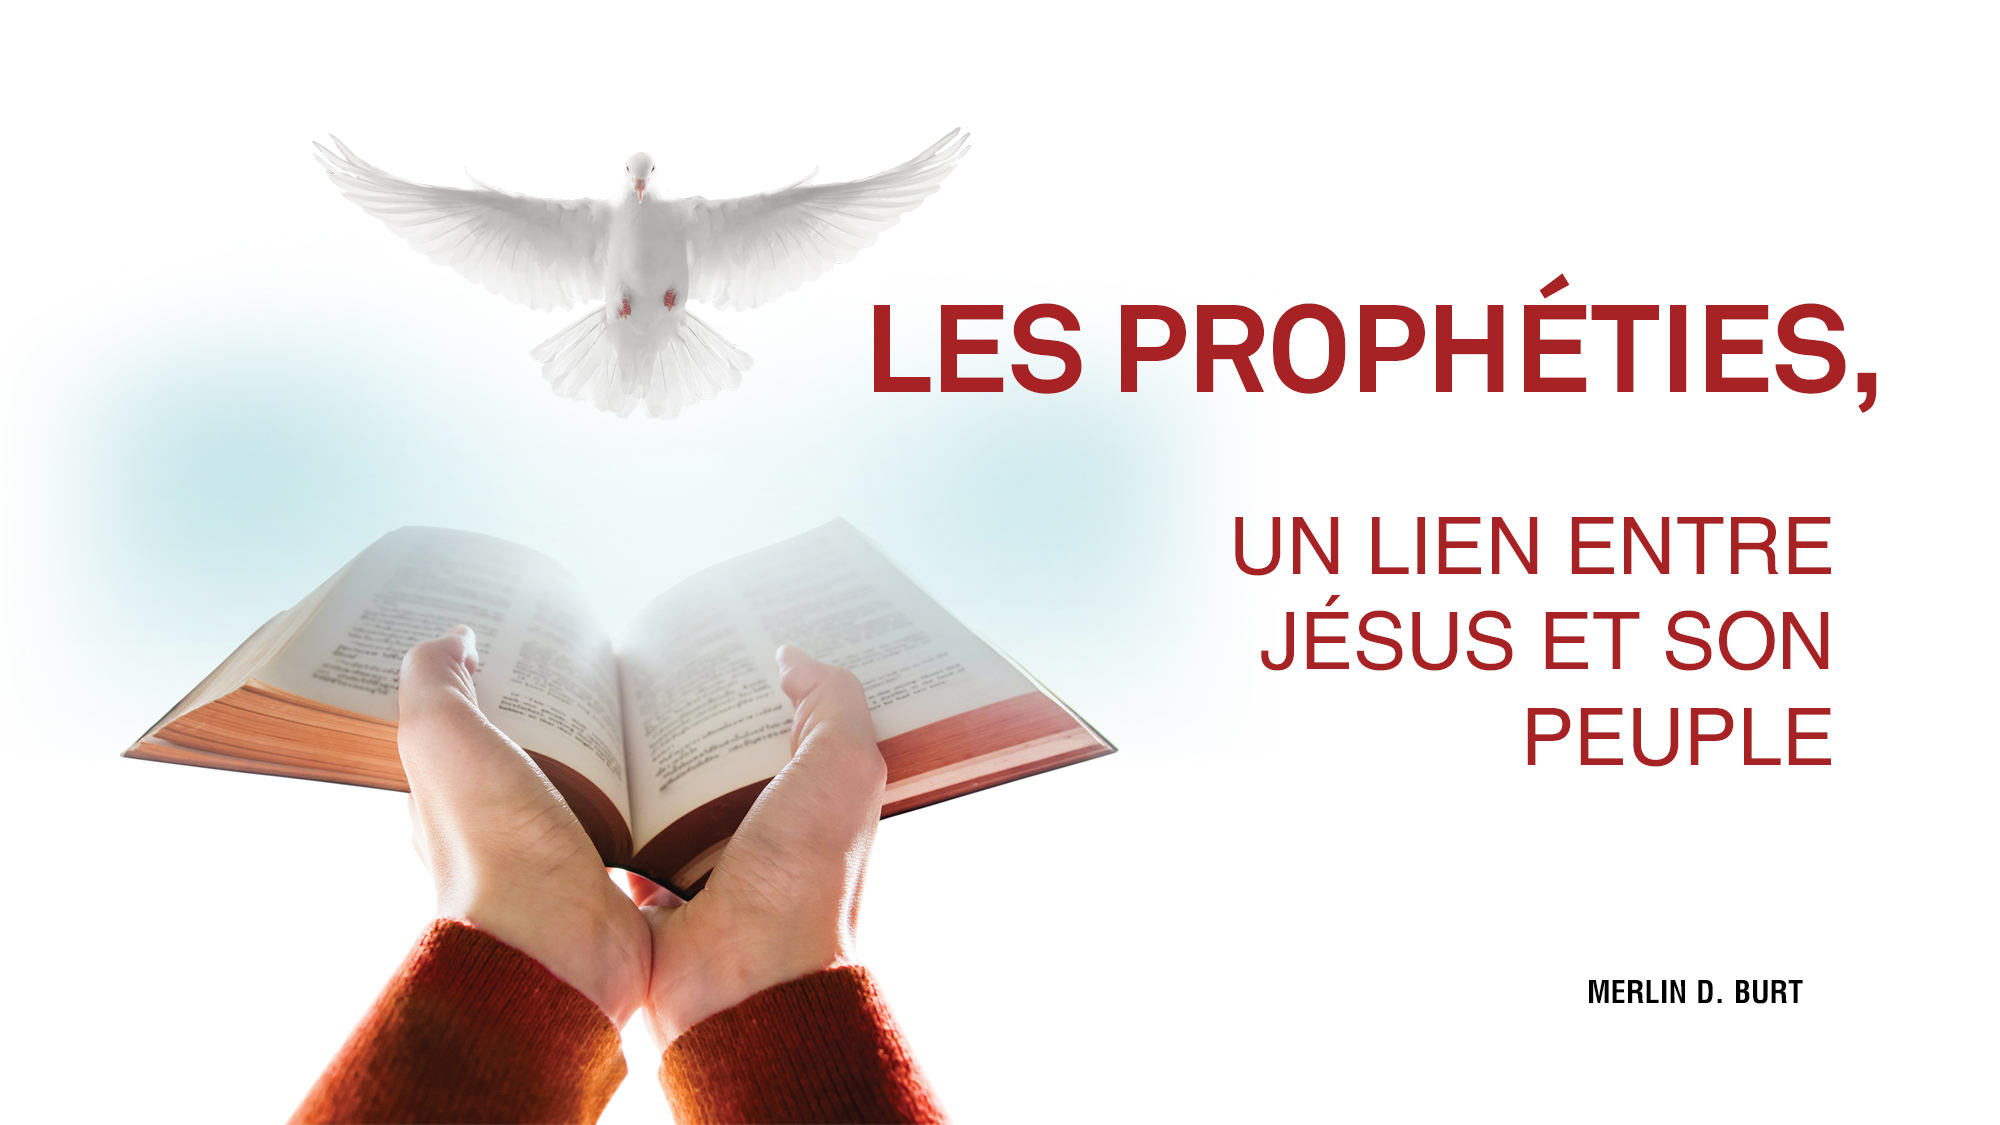 Les prophéties, un lien entre Jésus et son peuple